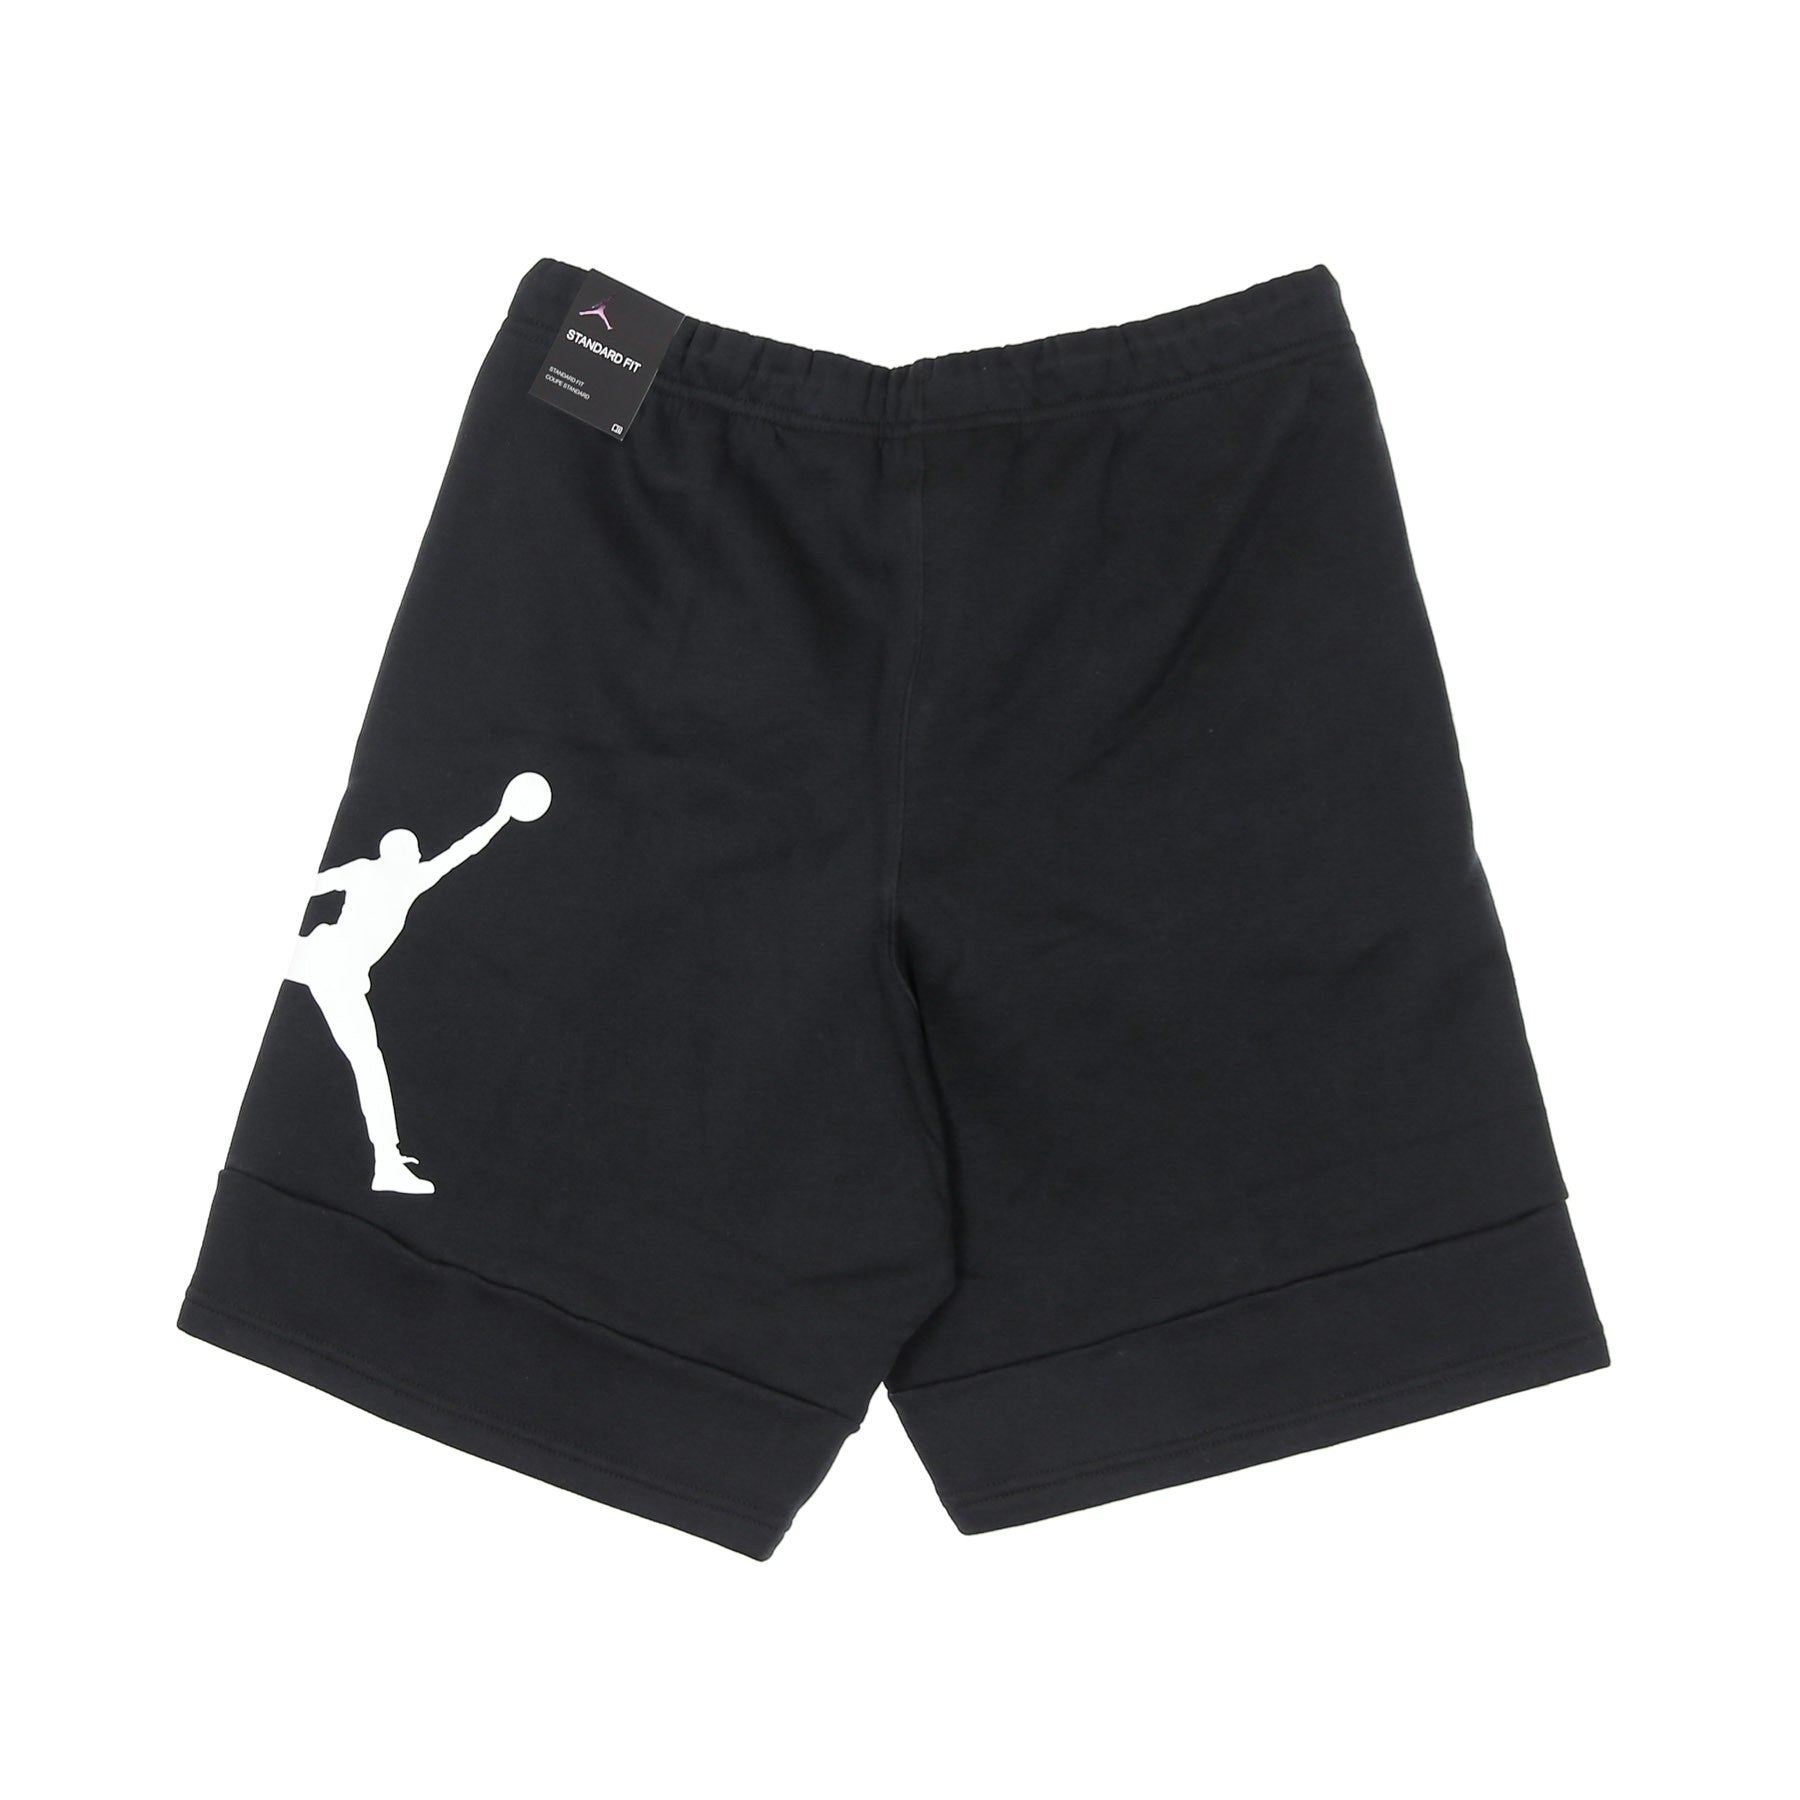 Pantalone Corto Tuta Felpato Uomo M  Jumpman Air Fleece Short Black/black/white